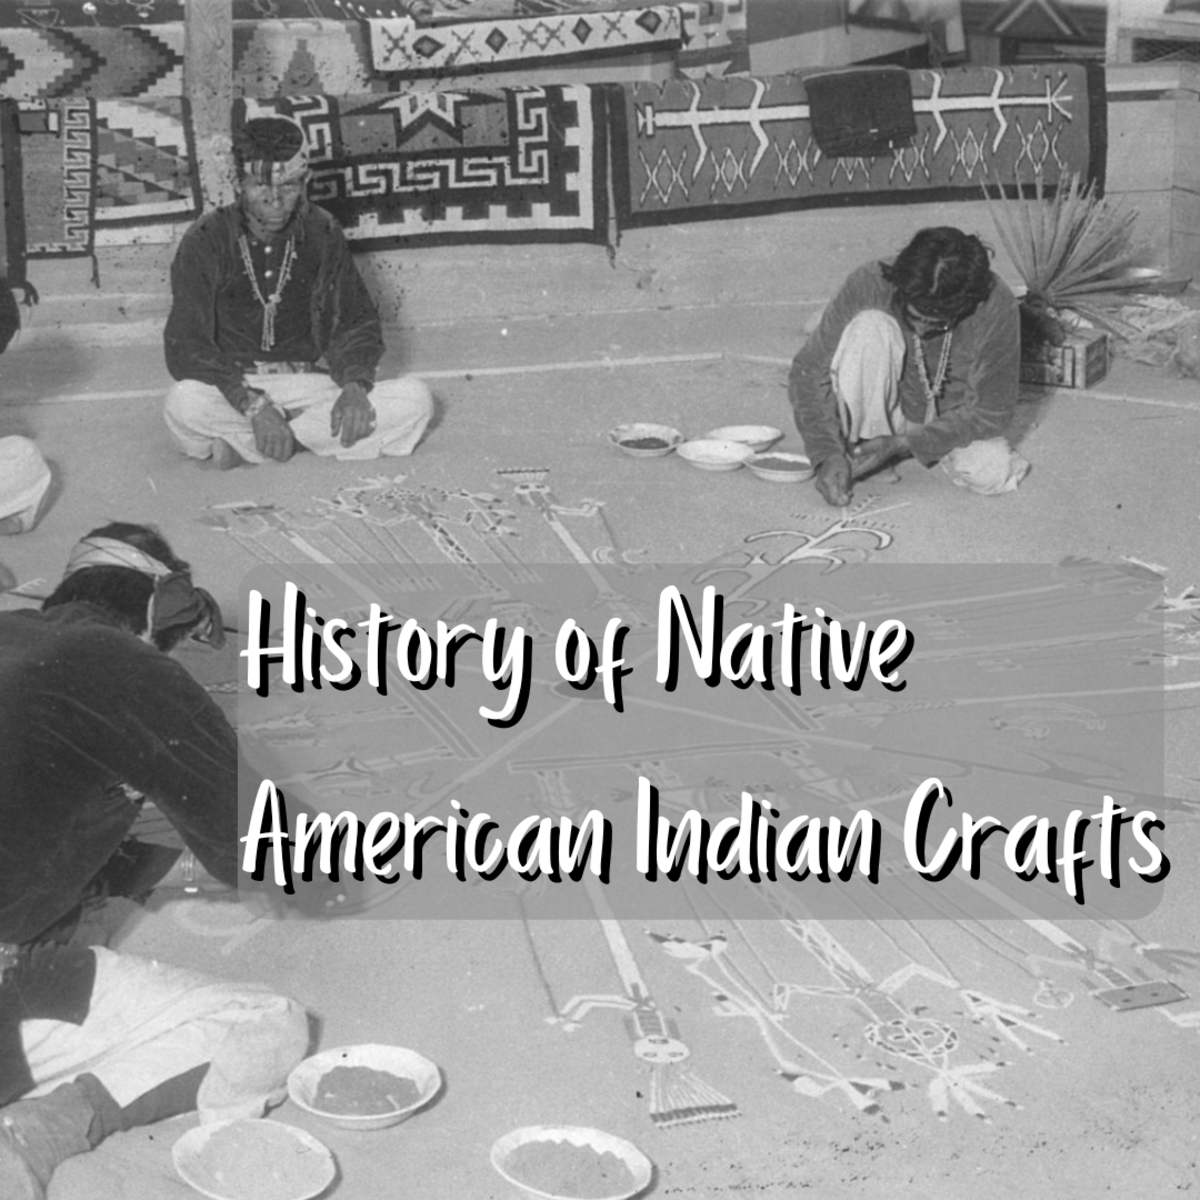 继续往下读，了解美国土著艺术和手工艺的活跃历史。上面的照片描绘了印第安人(纳瓦霍人)在一幅沙画上工作，可能是在亚利桑那州。旁边陈列着编织毛毯和地毯。